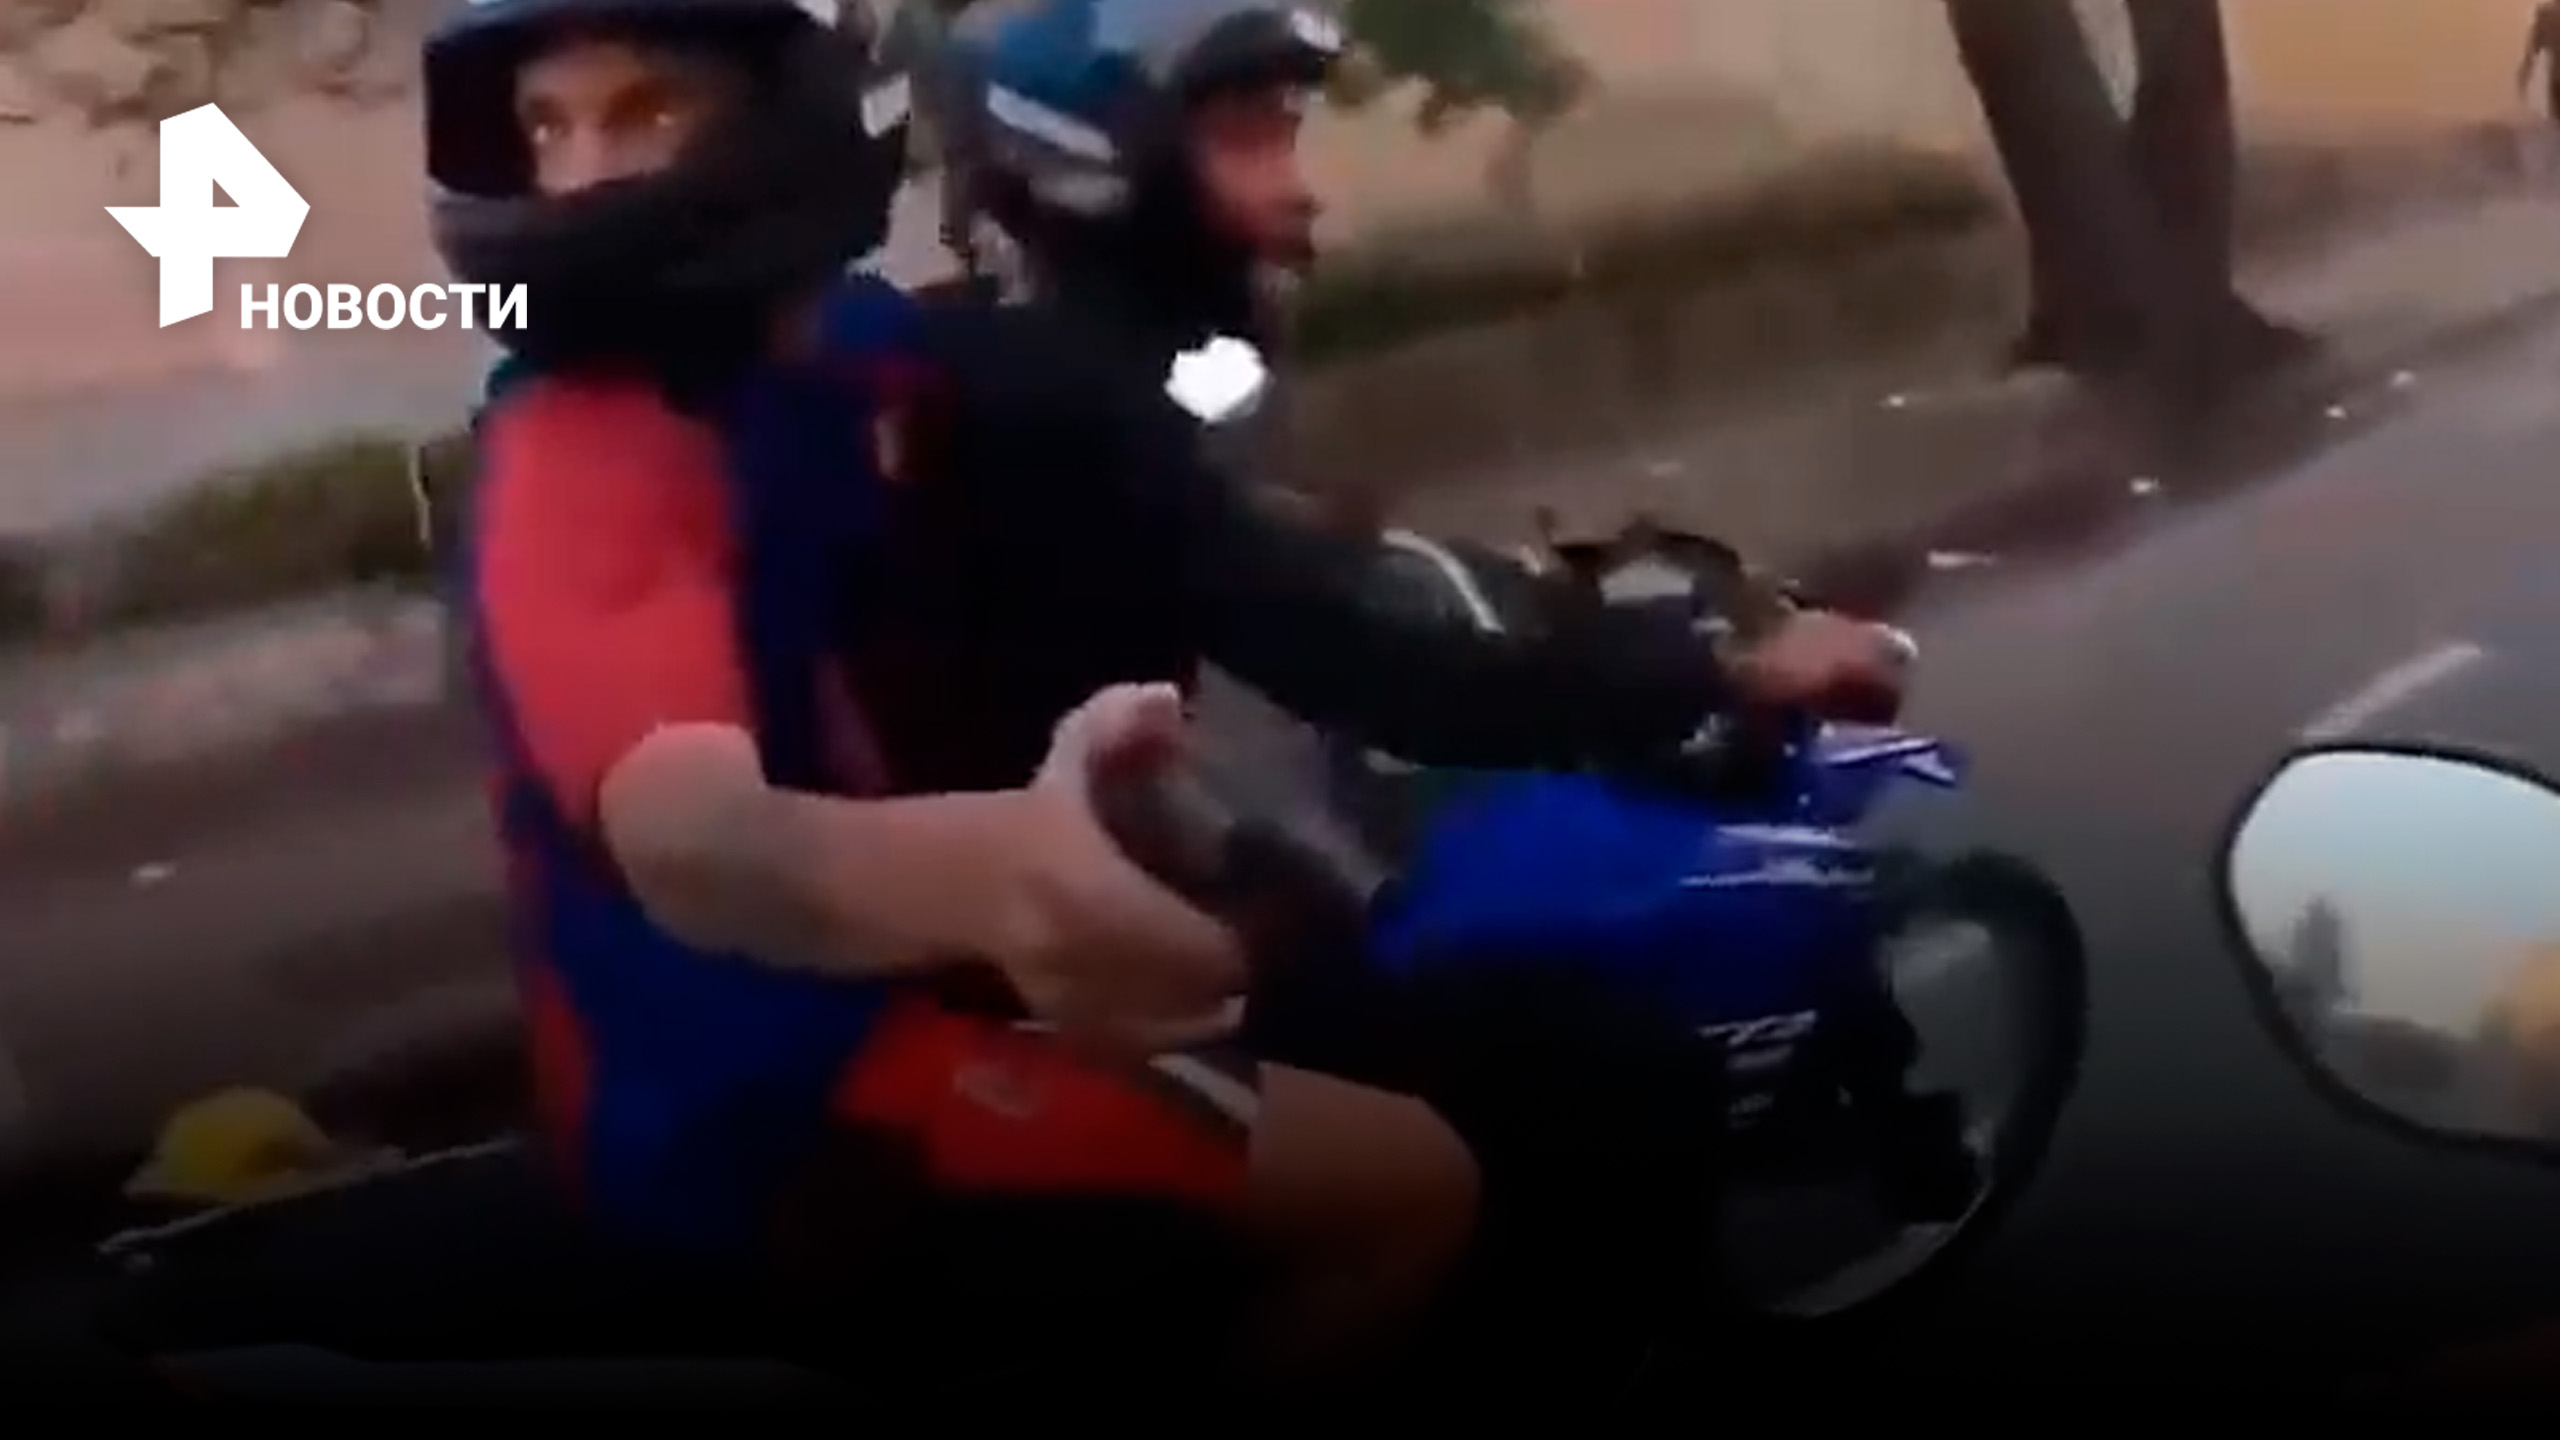 Отжать за 20 секунд: экспресс-ограбление мотоциклиста в Бразилии